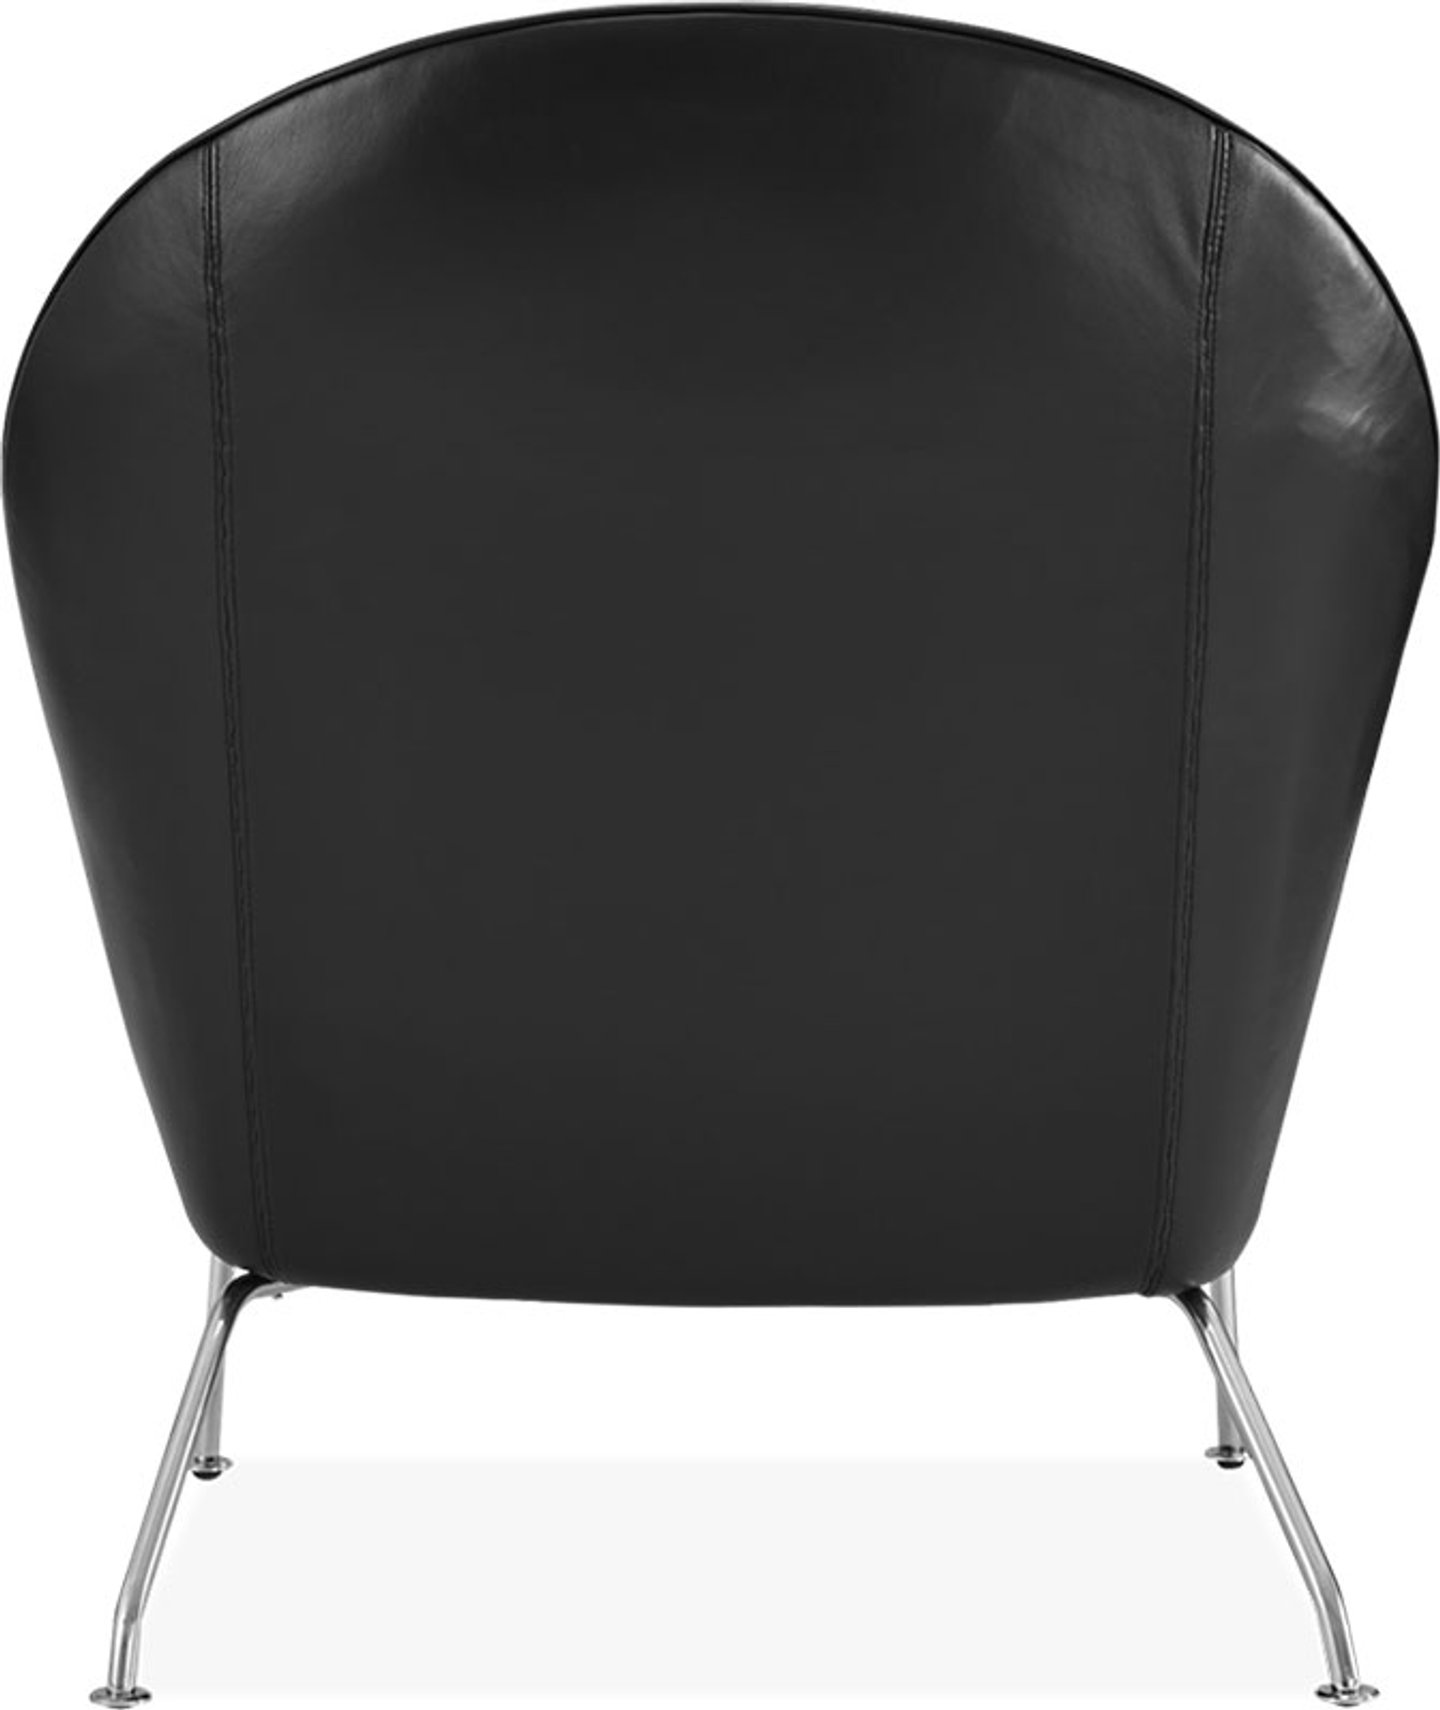 Chaise Oculus Premium Leather/Black  image.